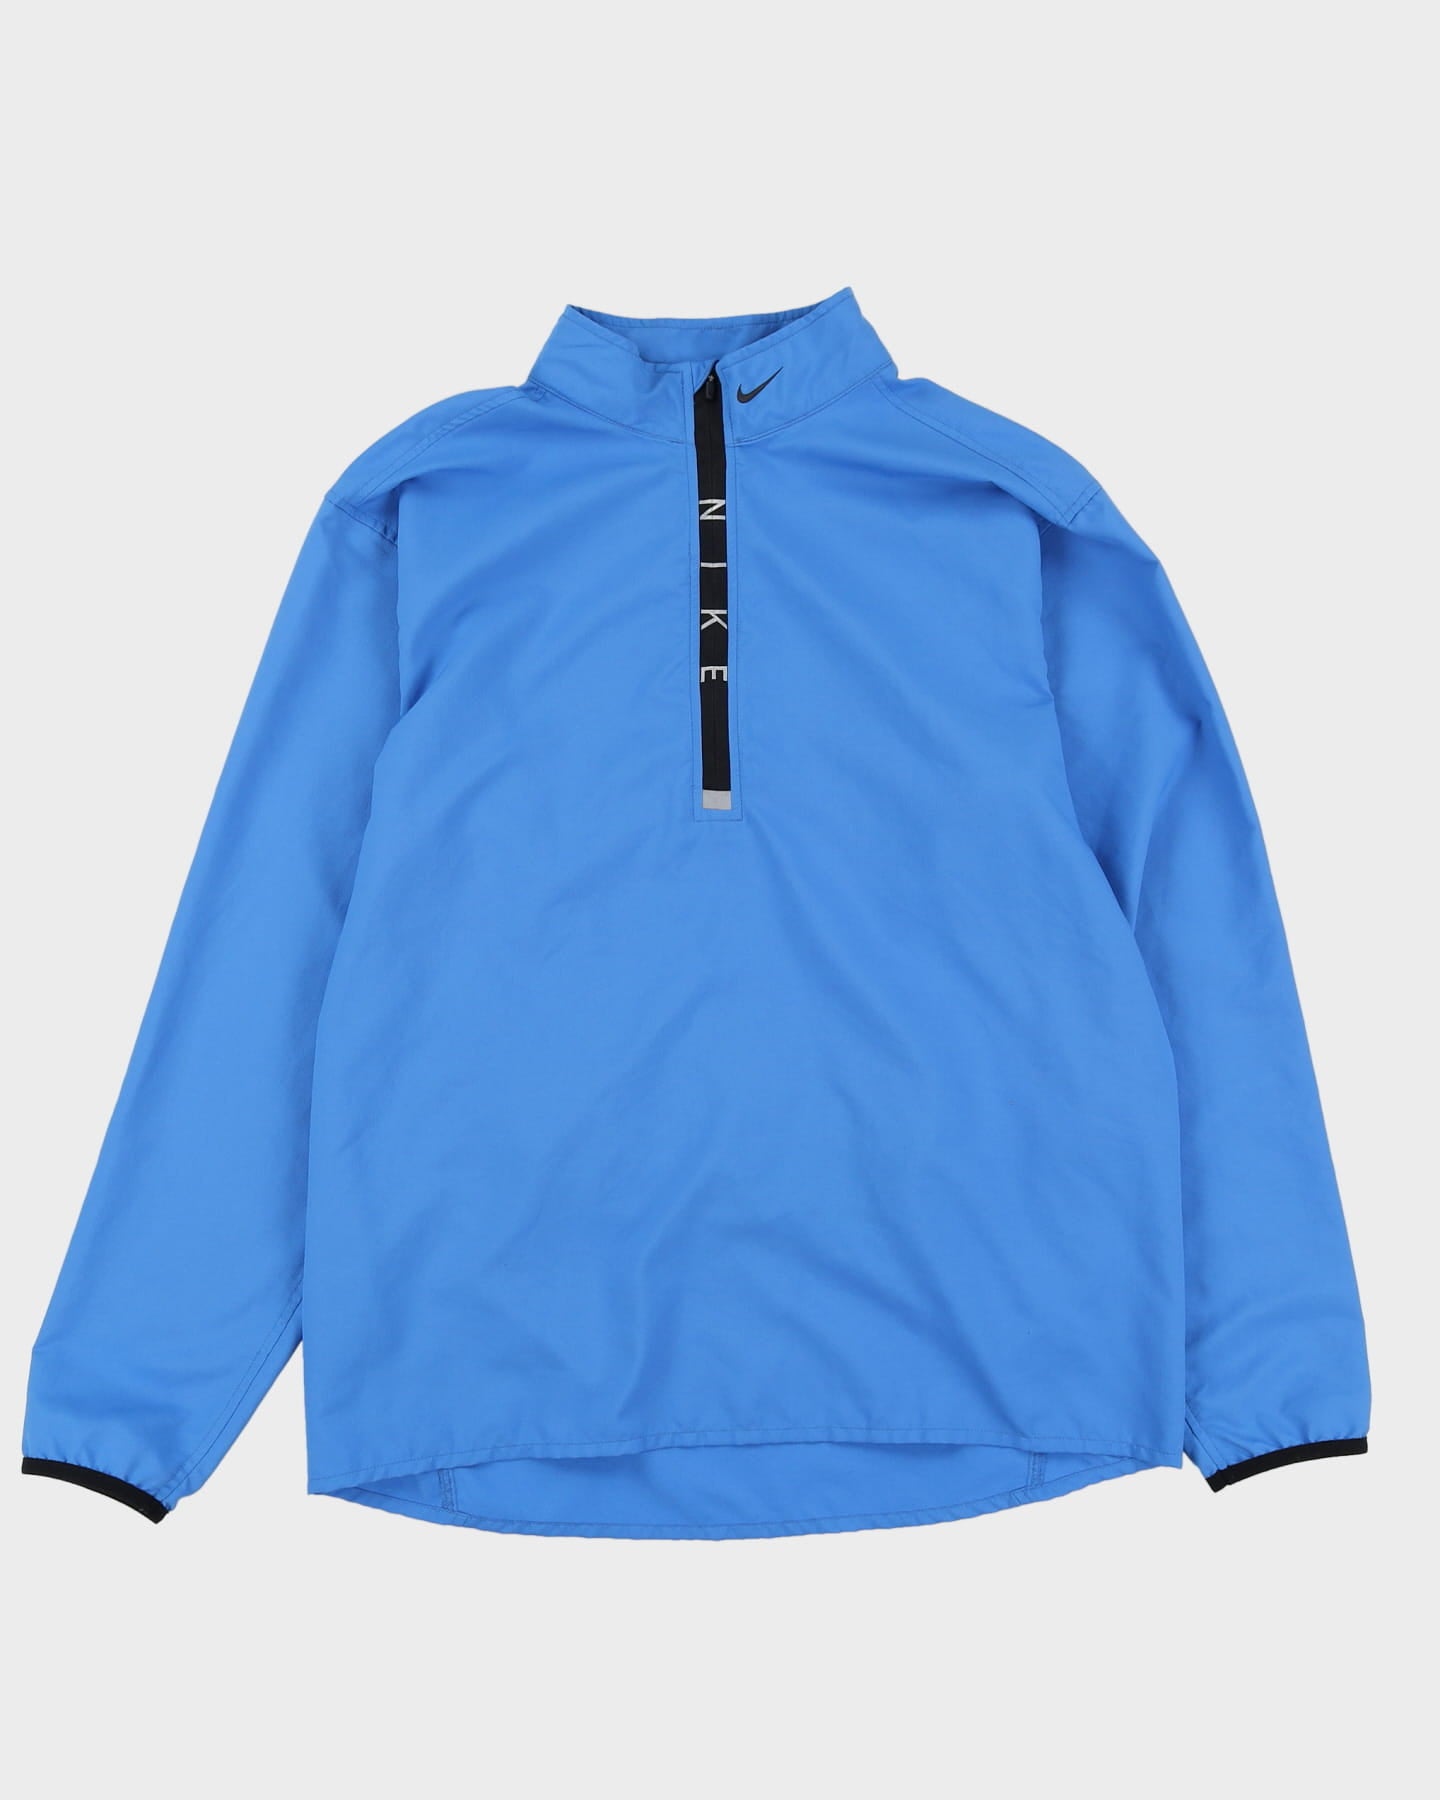 00s Nike Powder Blue Half-Zip Windbreaker Jacket - L